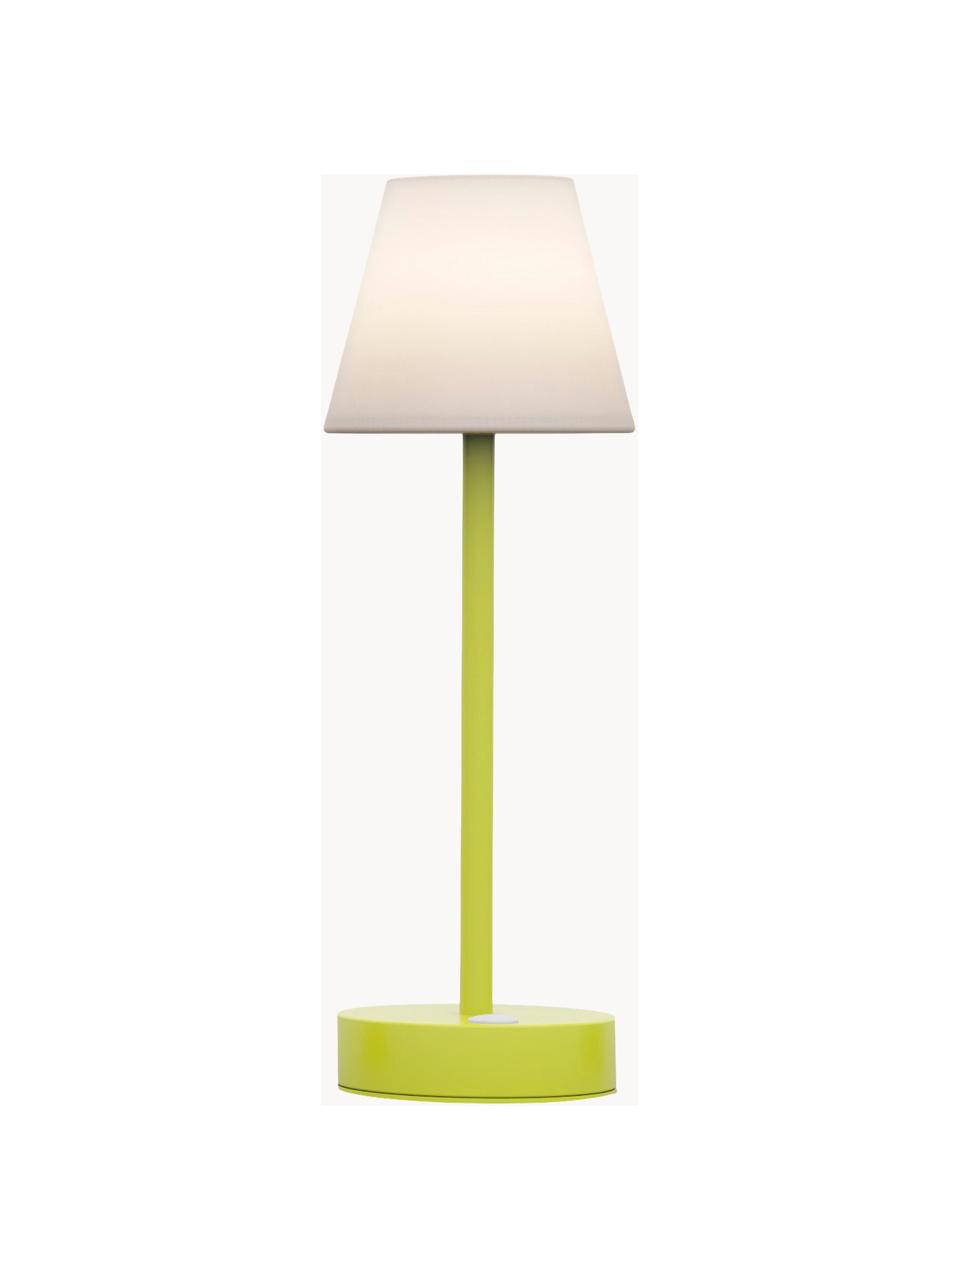 Přenosná stmívatelná venkovní stolní LED lampa s dotykovou funkcí Lola, Bílá, světle zelená, Ø 11 cm, V 32 cm